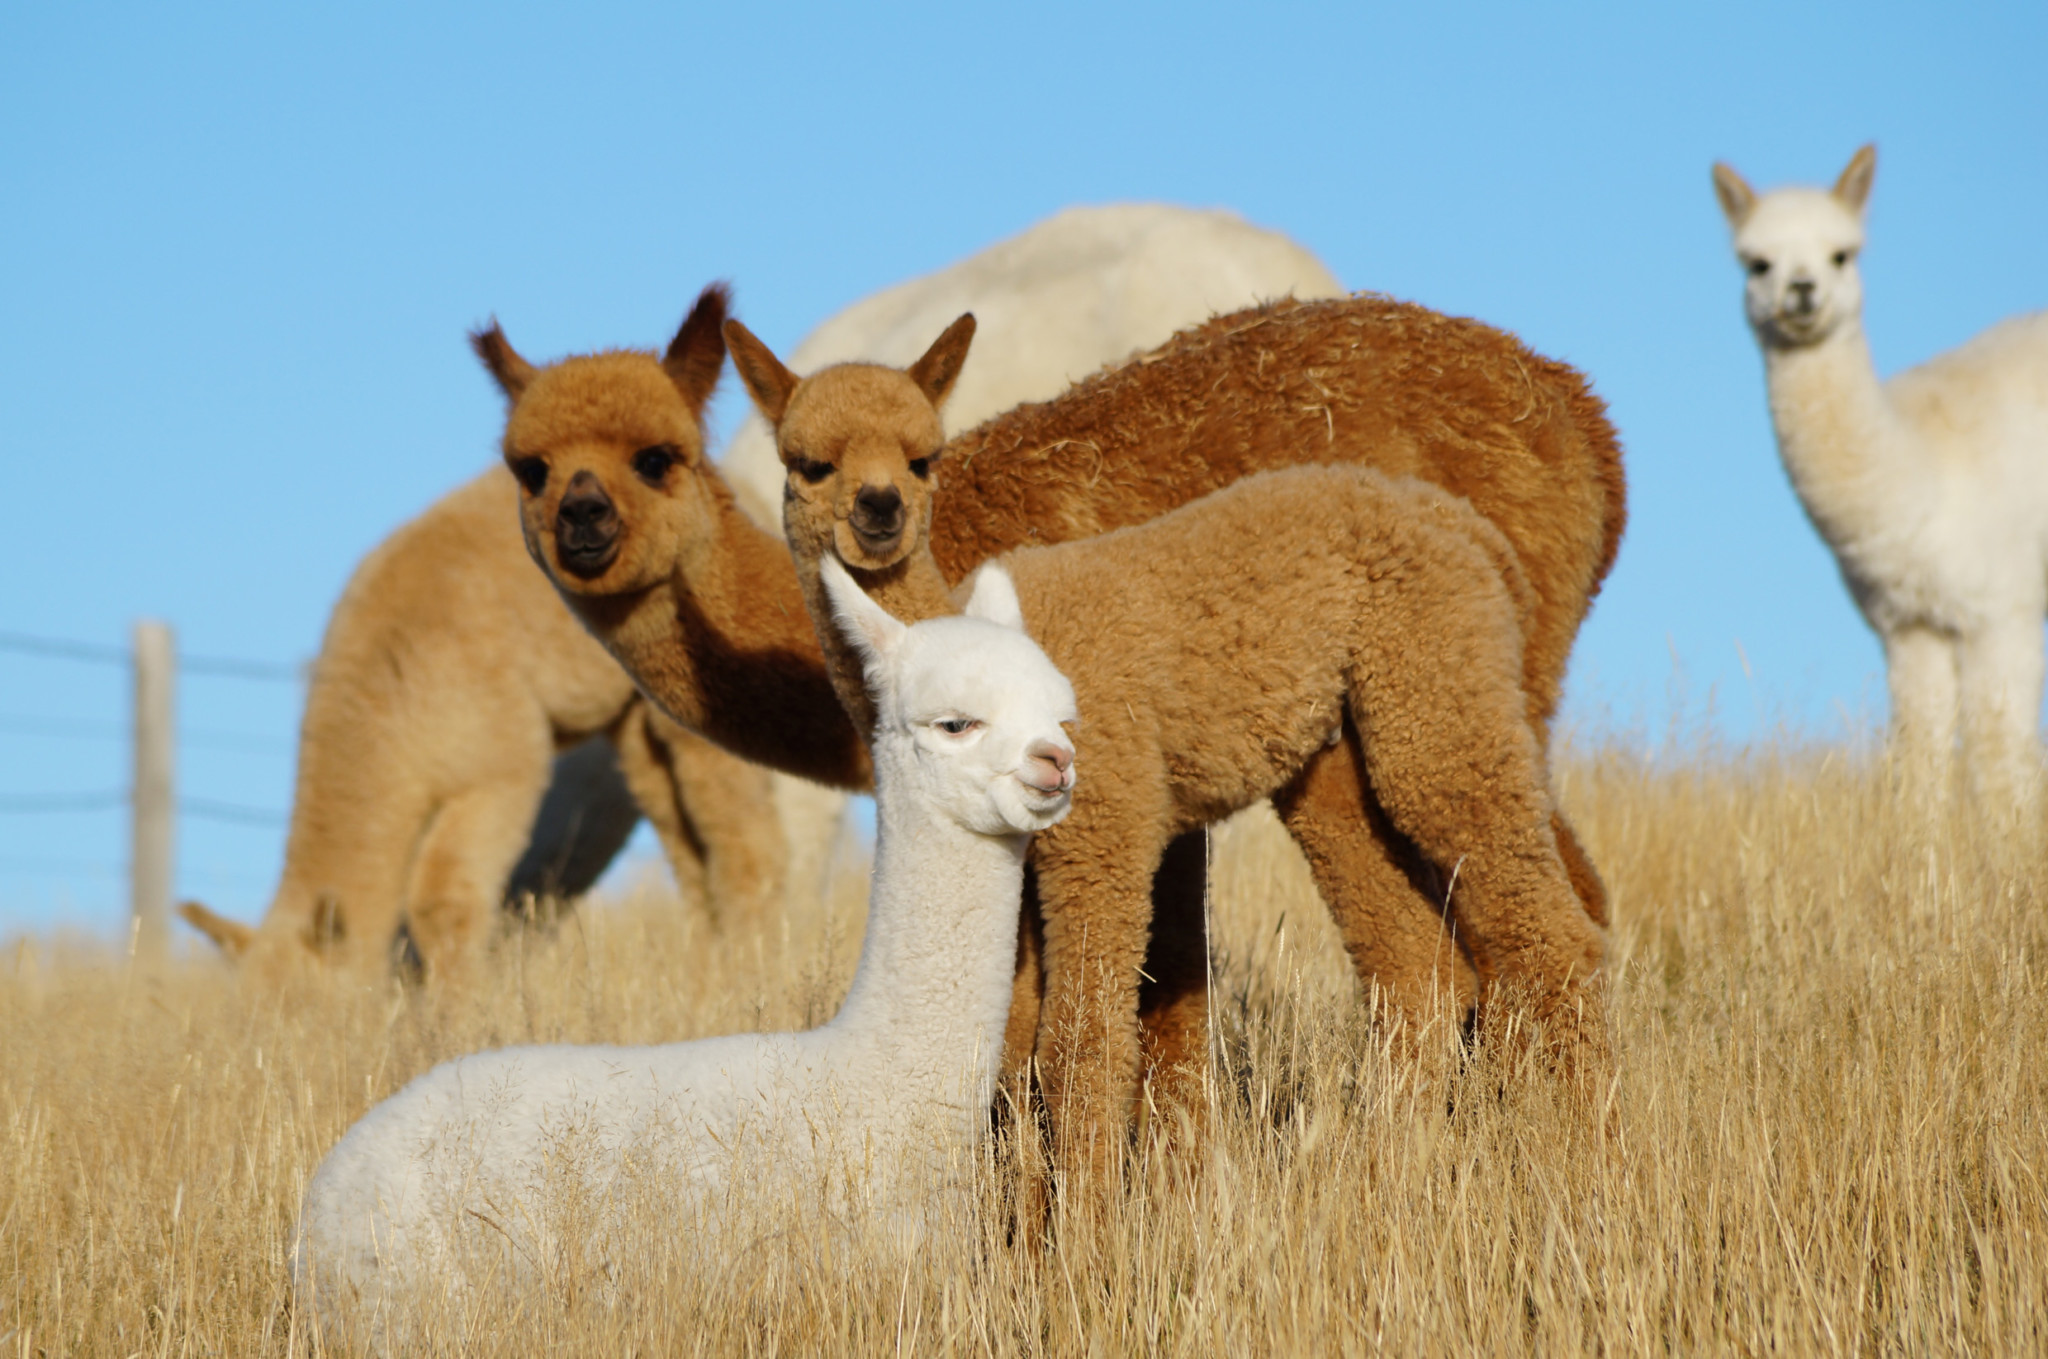 A group of small baby alpacas (cria)